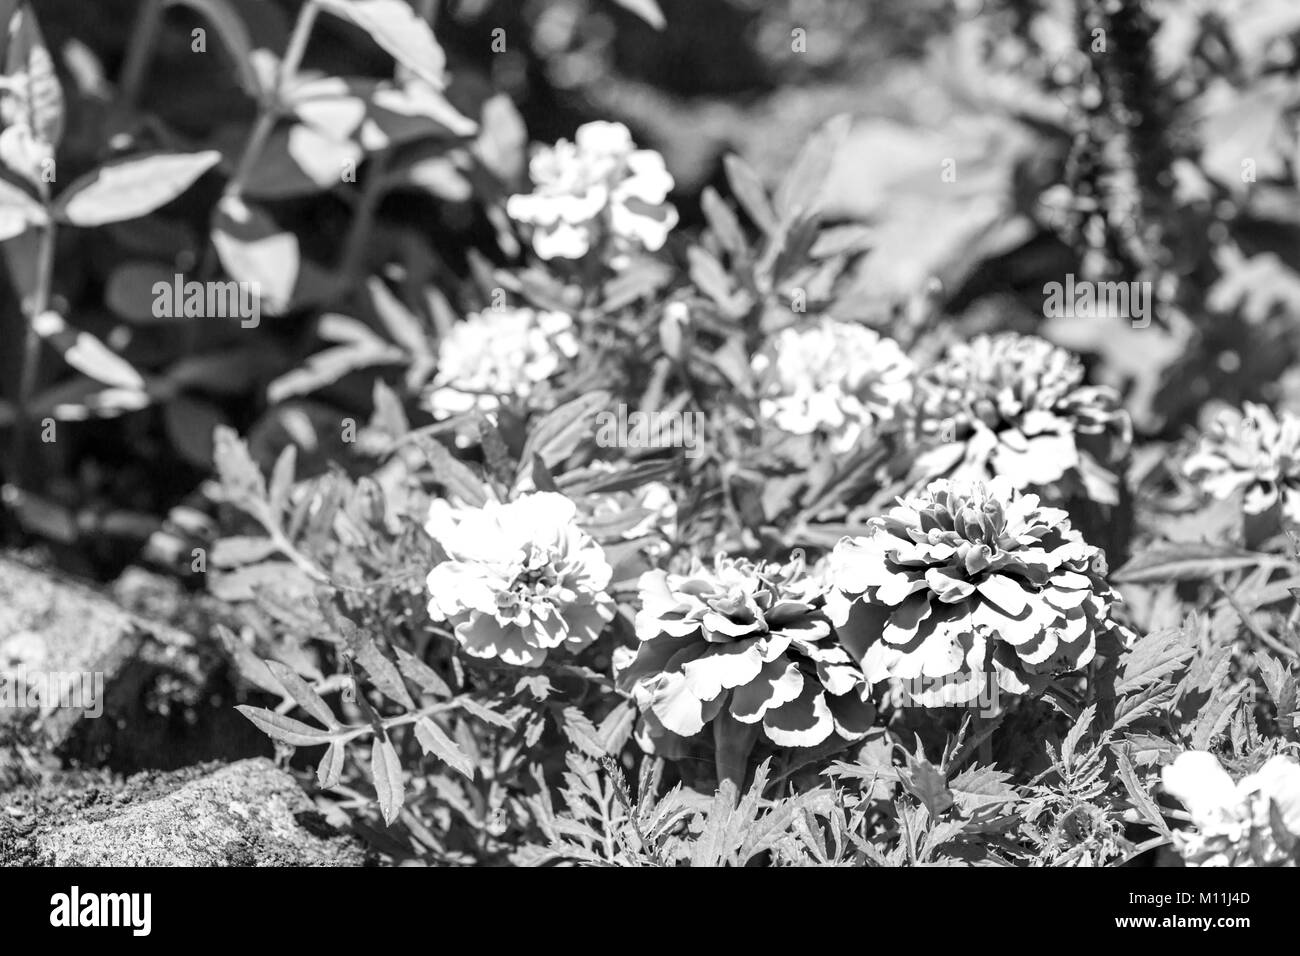 Beautiful Black and white daisies. Rocca di Mezzo, province of L'Aquila, Abruzzo, Italy Stock Photo